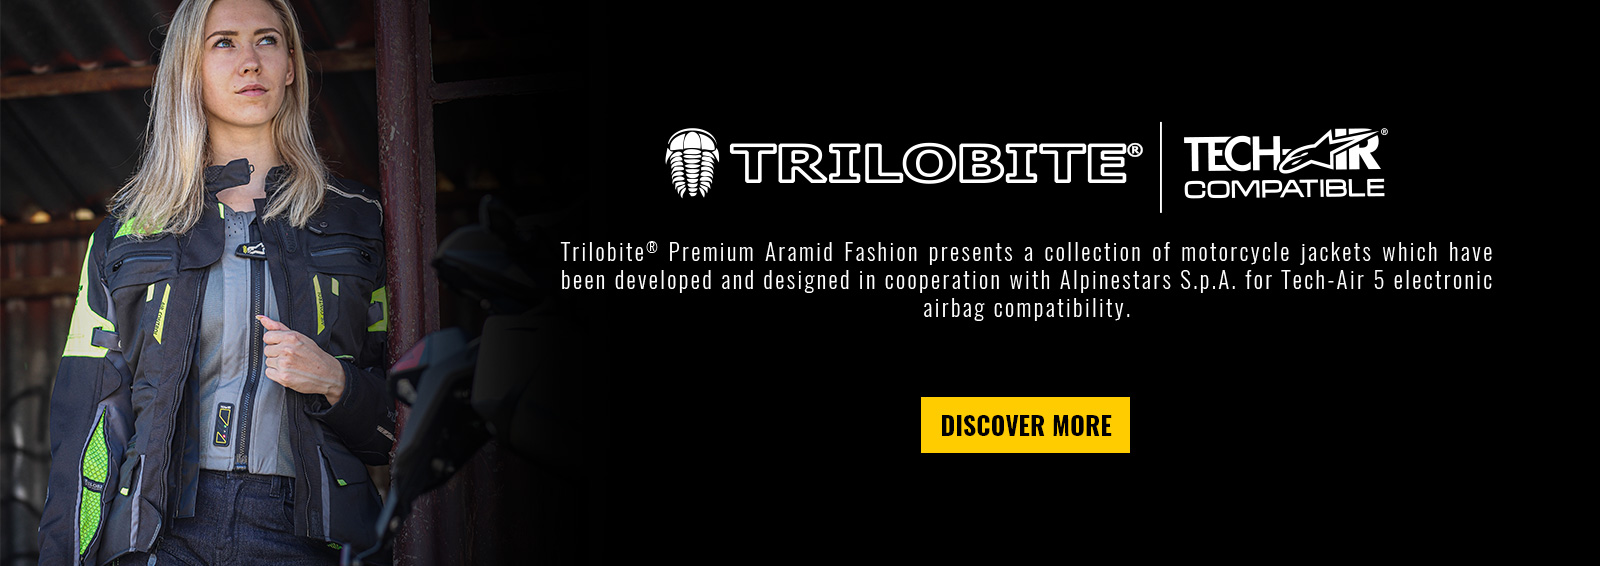 Trilobite Tech-Air